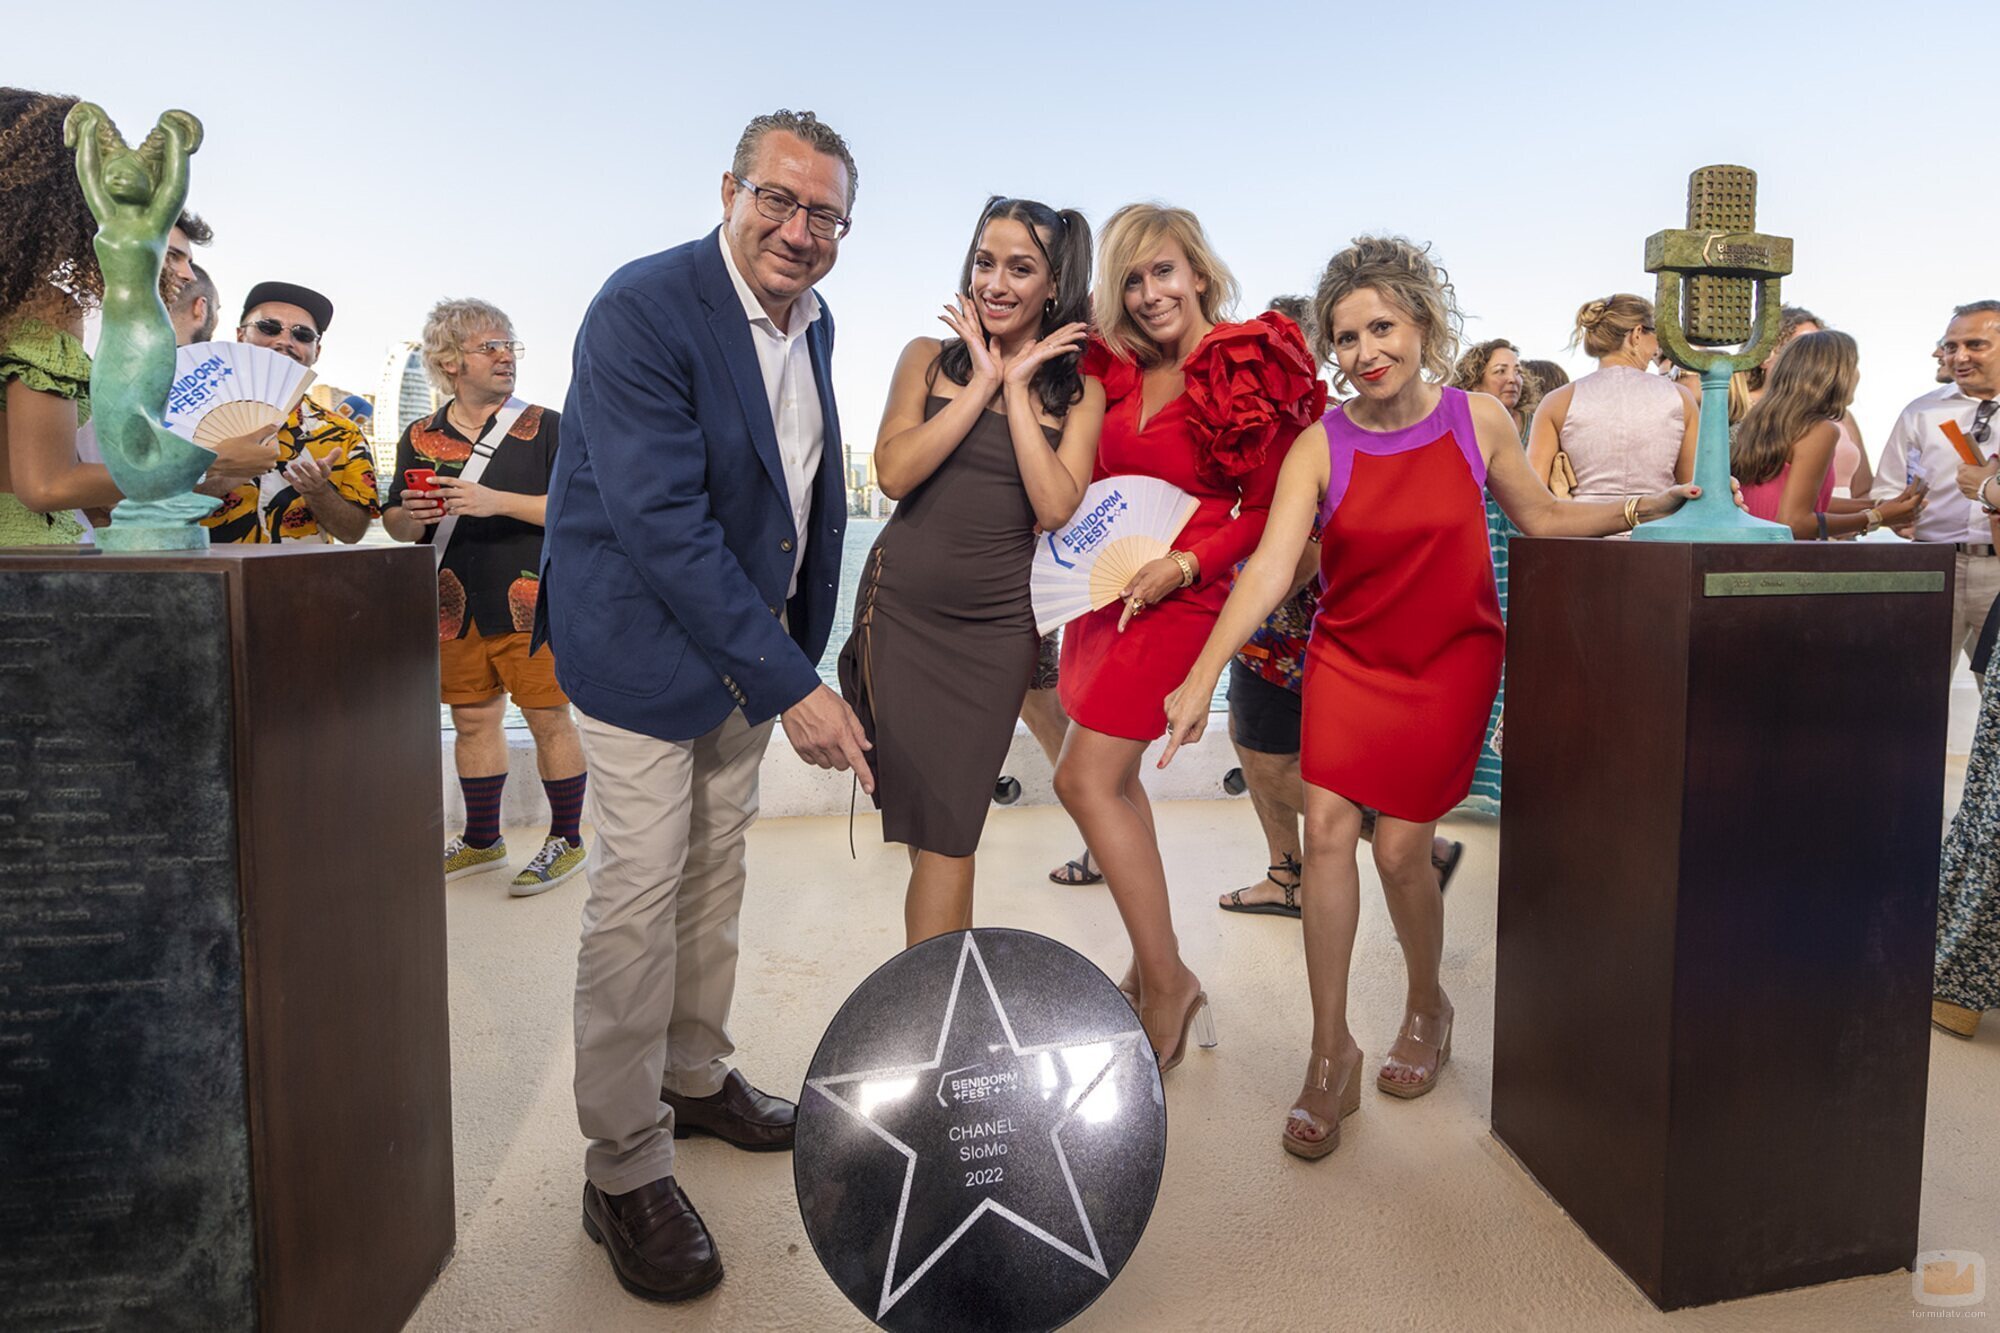 Chanel inaugura su estrella en el Mirador de la Música de Benidorm